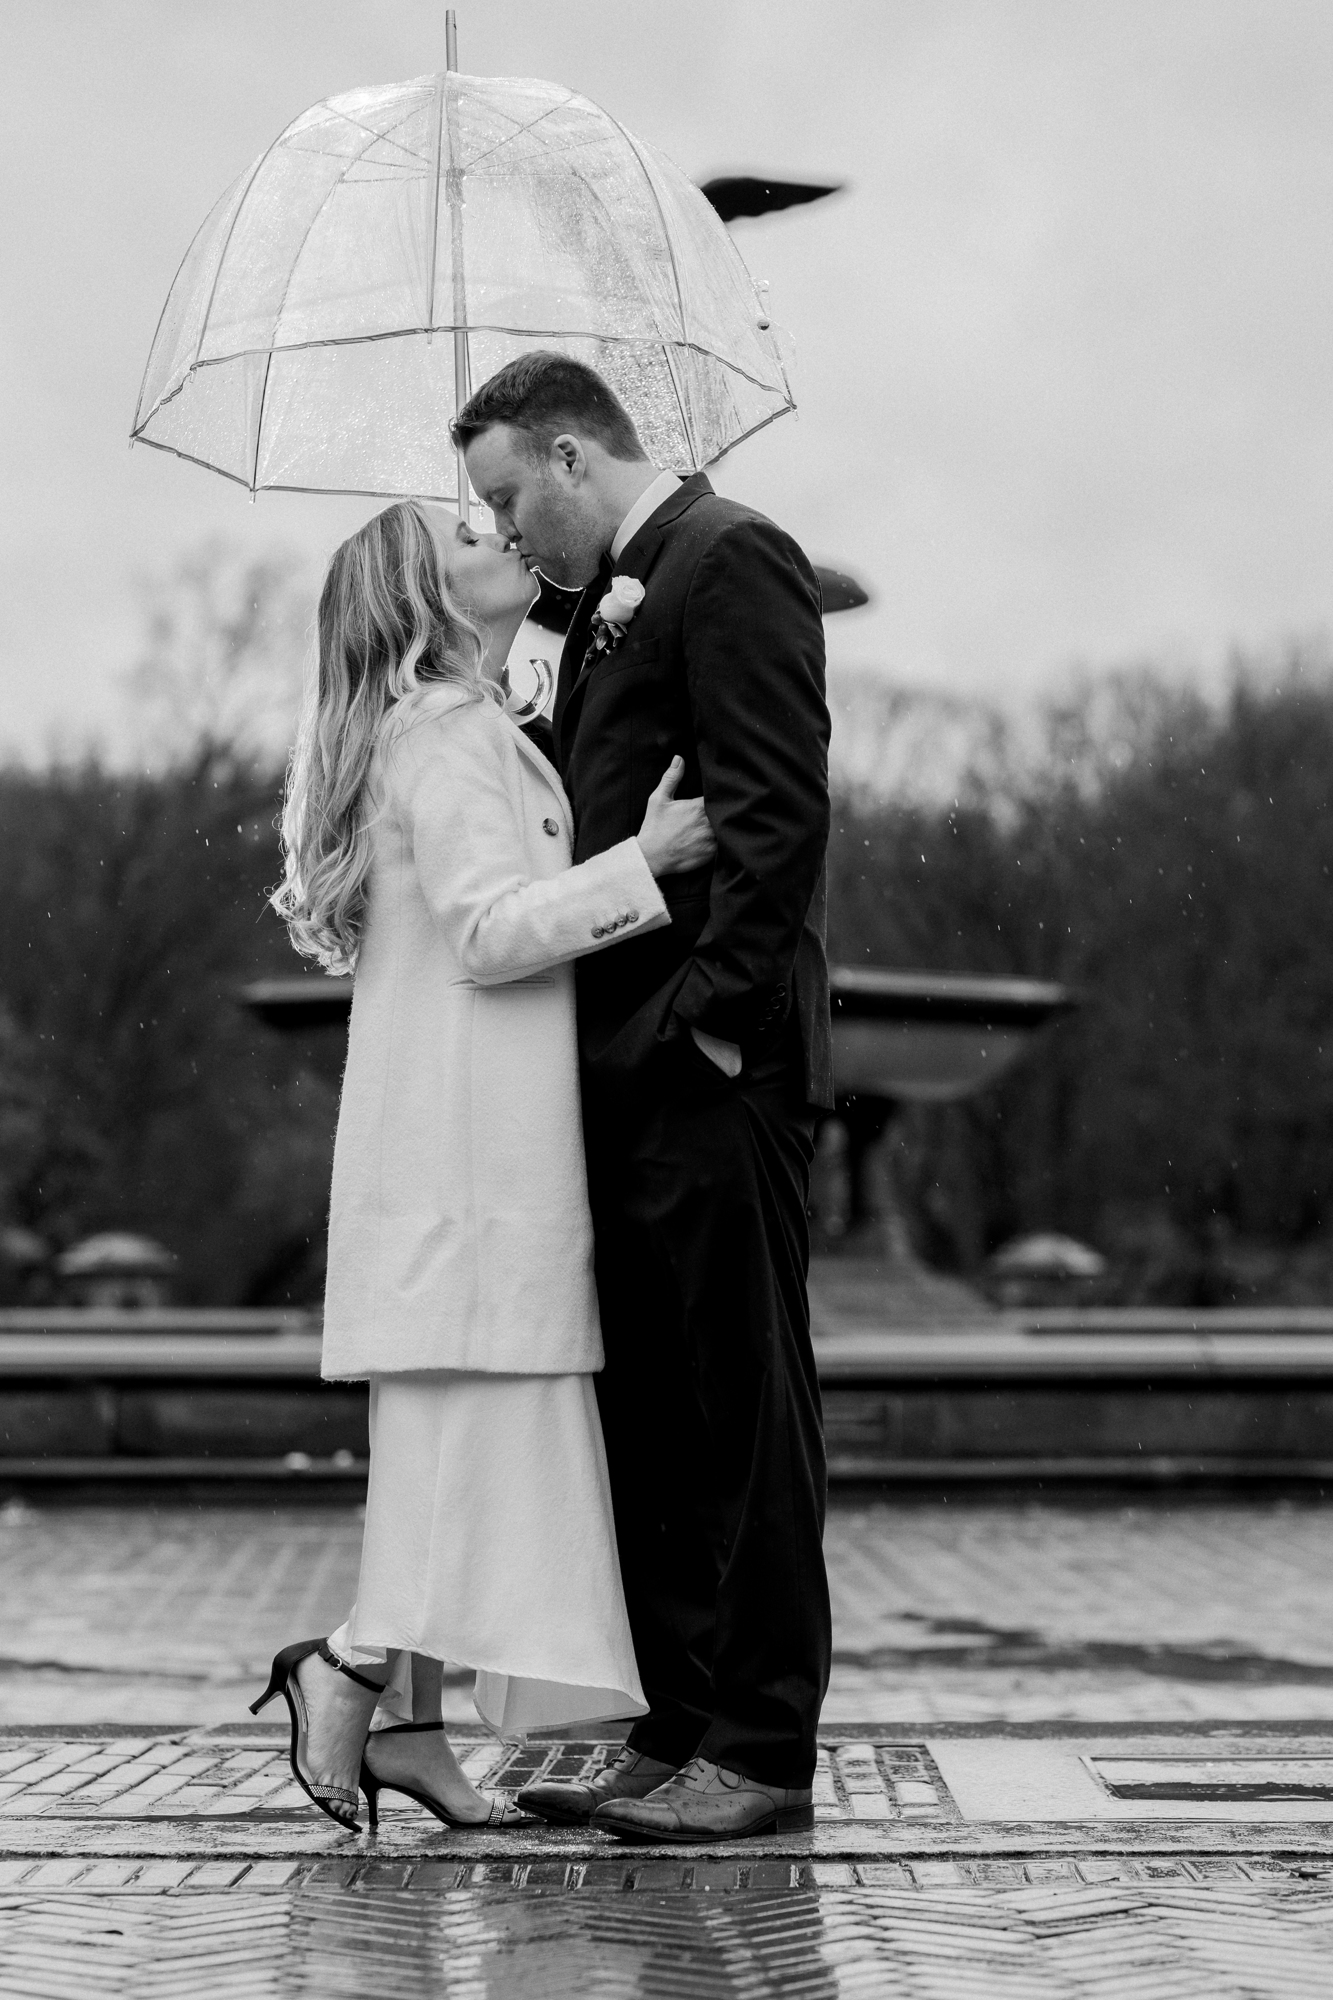 Rainy wedding photos in Central Park